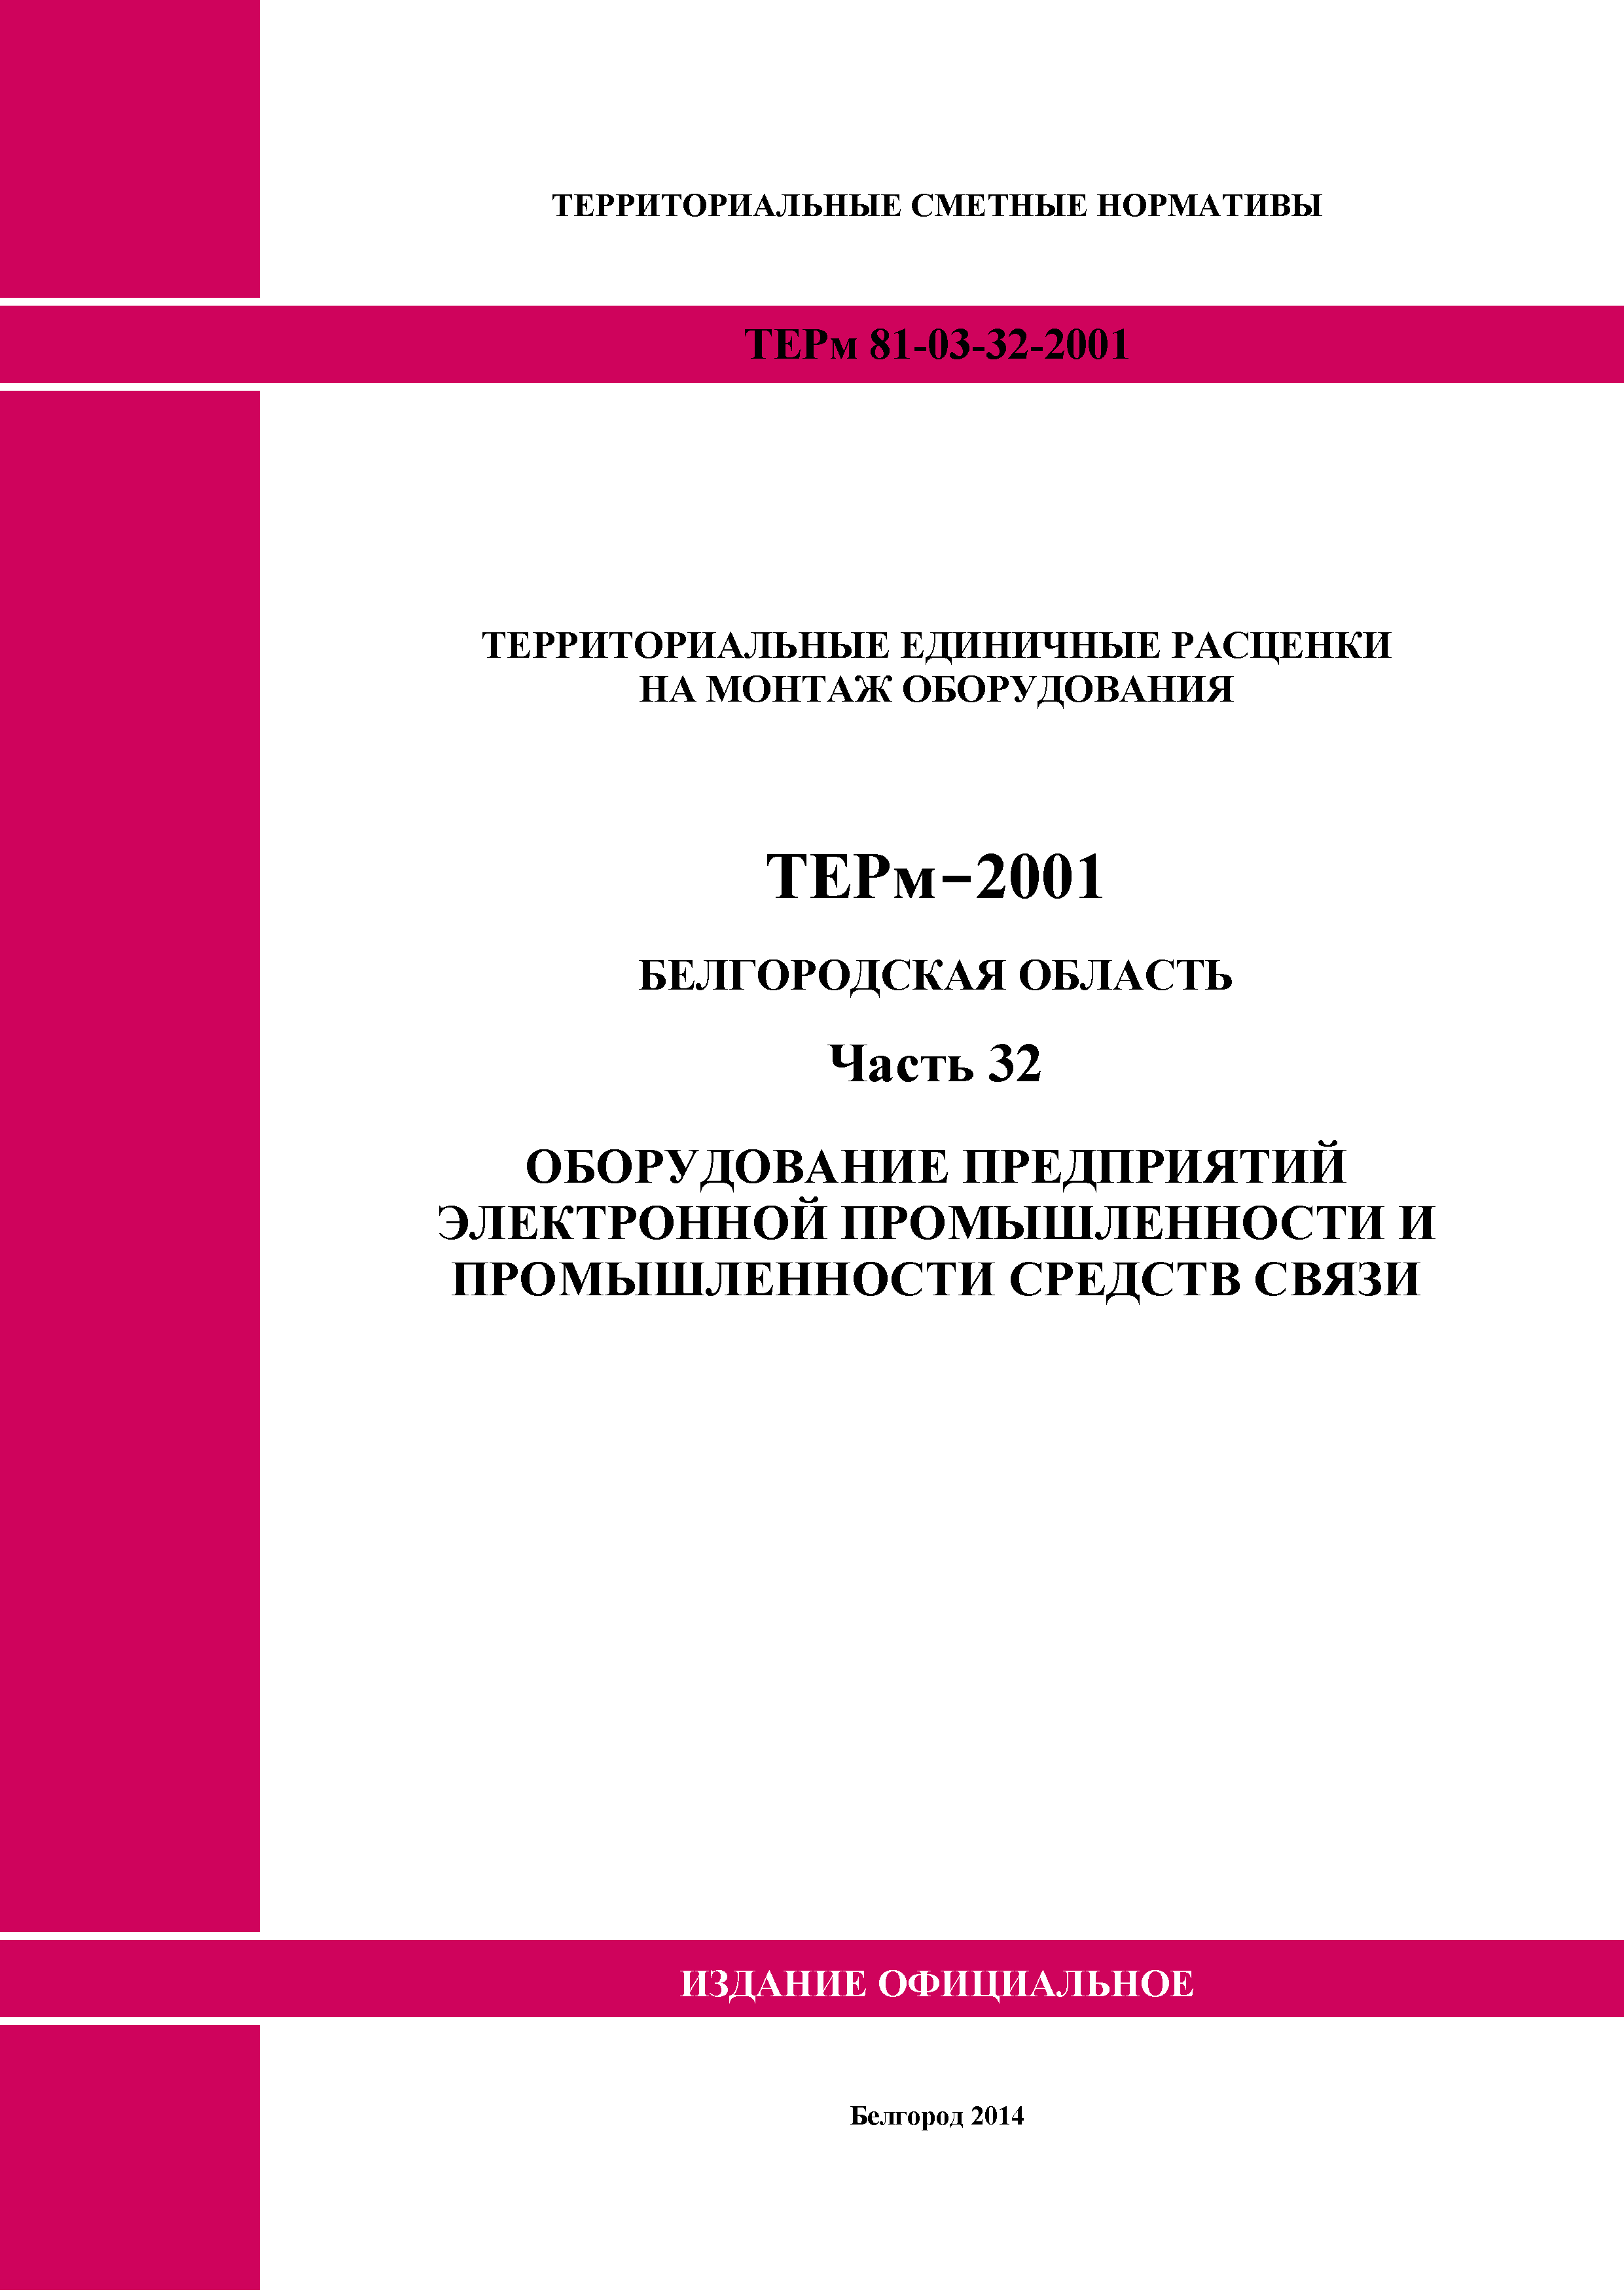 ТЕРм Белгородская область 81-03-32-2001